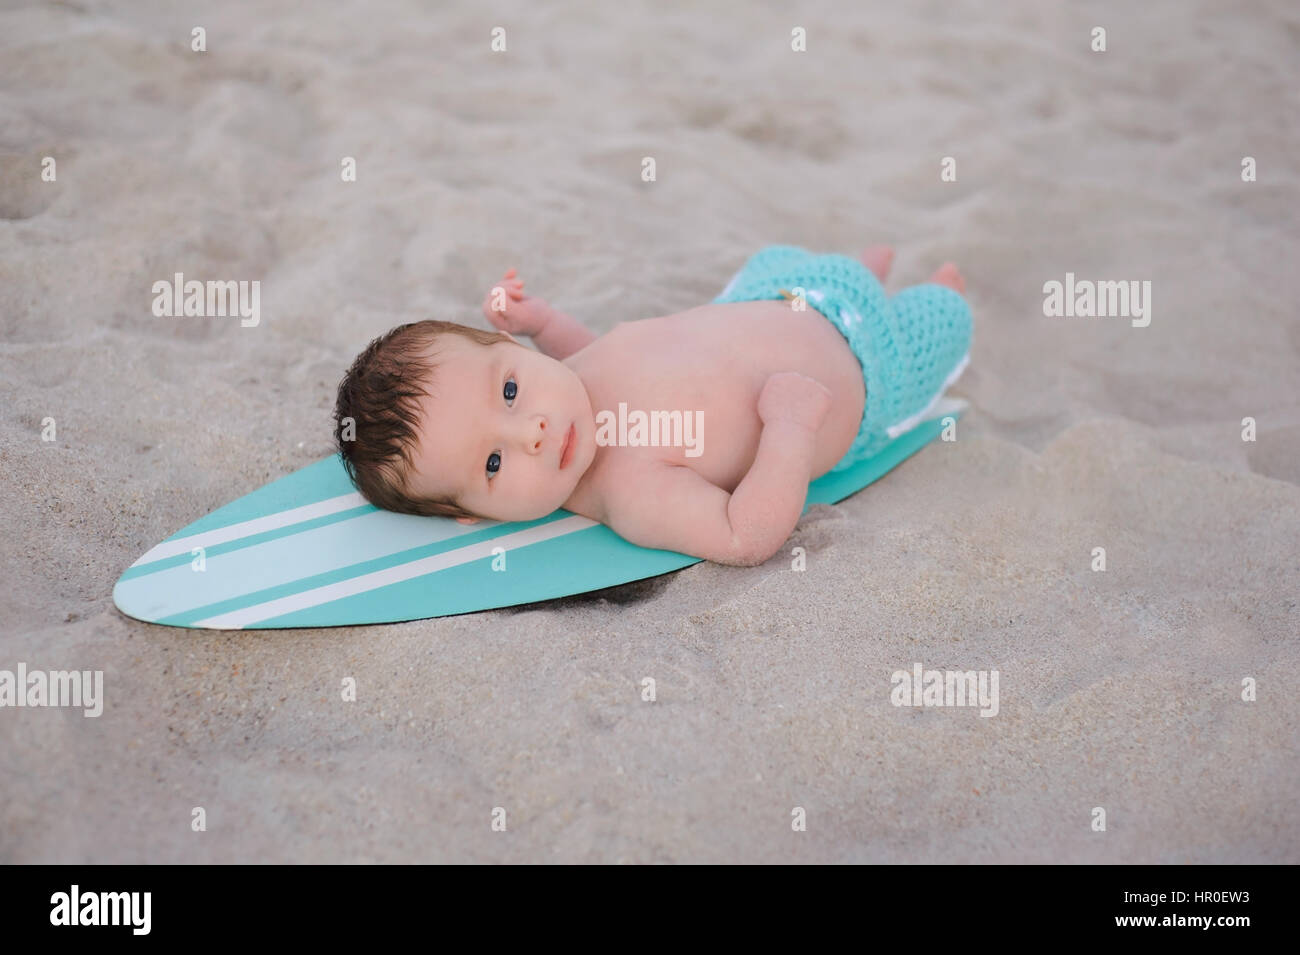 Deux semaines de bébé nouveau-né garçon couché sur un minuscule, bleu turquoise et blanc de surf. Il porte, de couleur aqua short board et allongé sur une plage de sable Banque D'Images